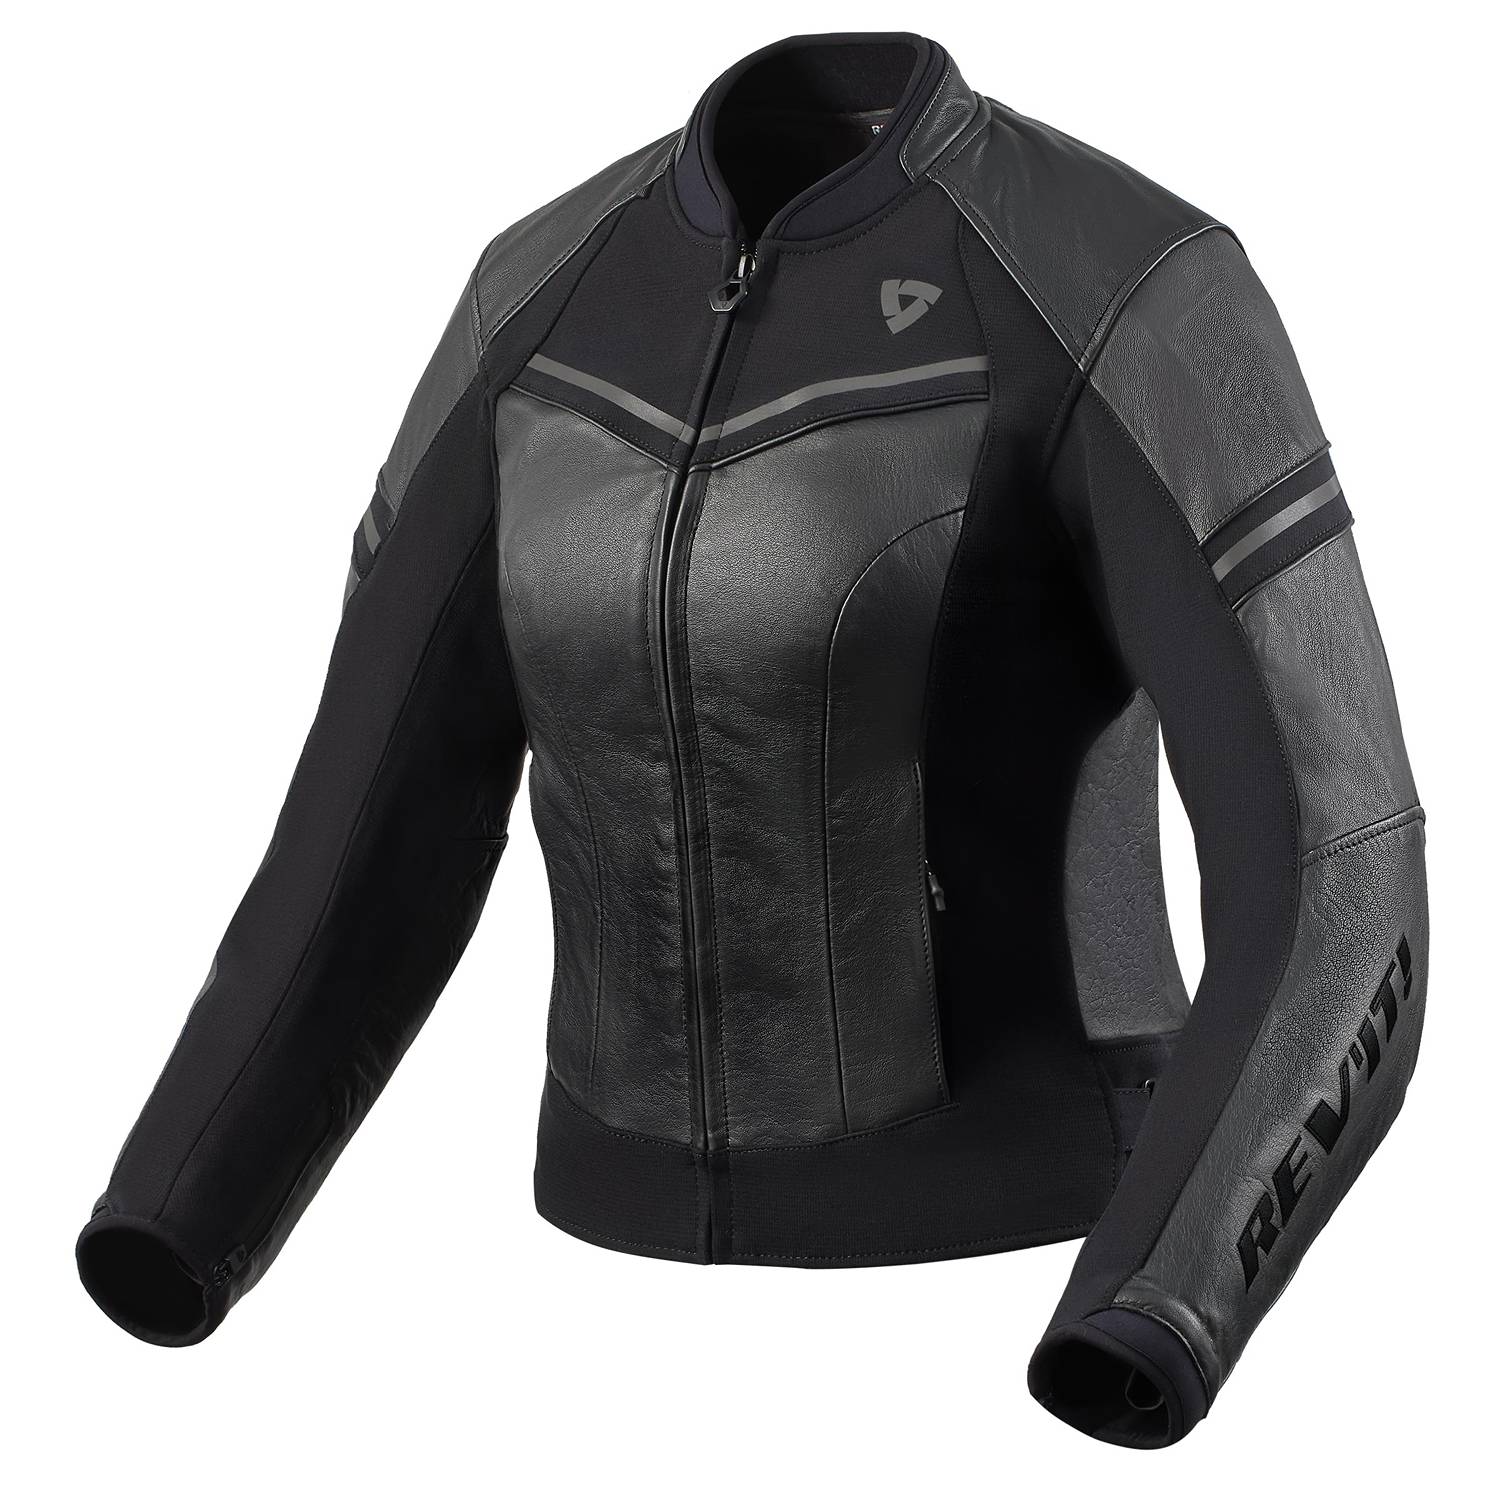 Image of REV'IT! Median Ladies Jacket Black Anthracite Size 34 EN